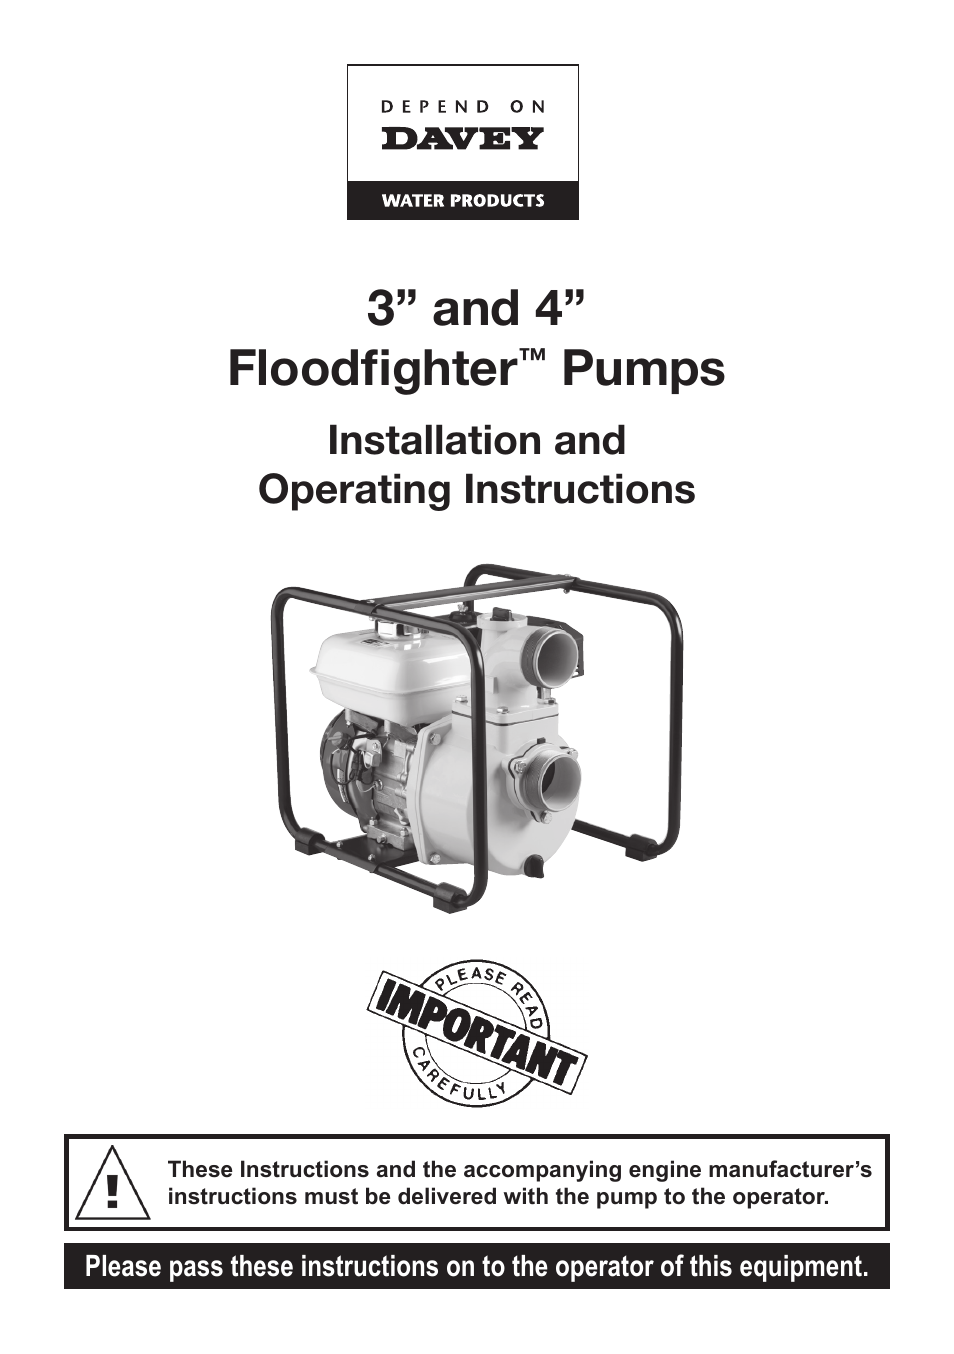 4 Floodfighter Pumps